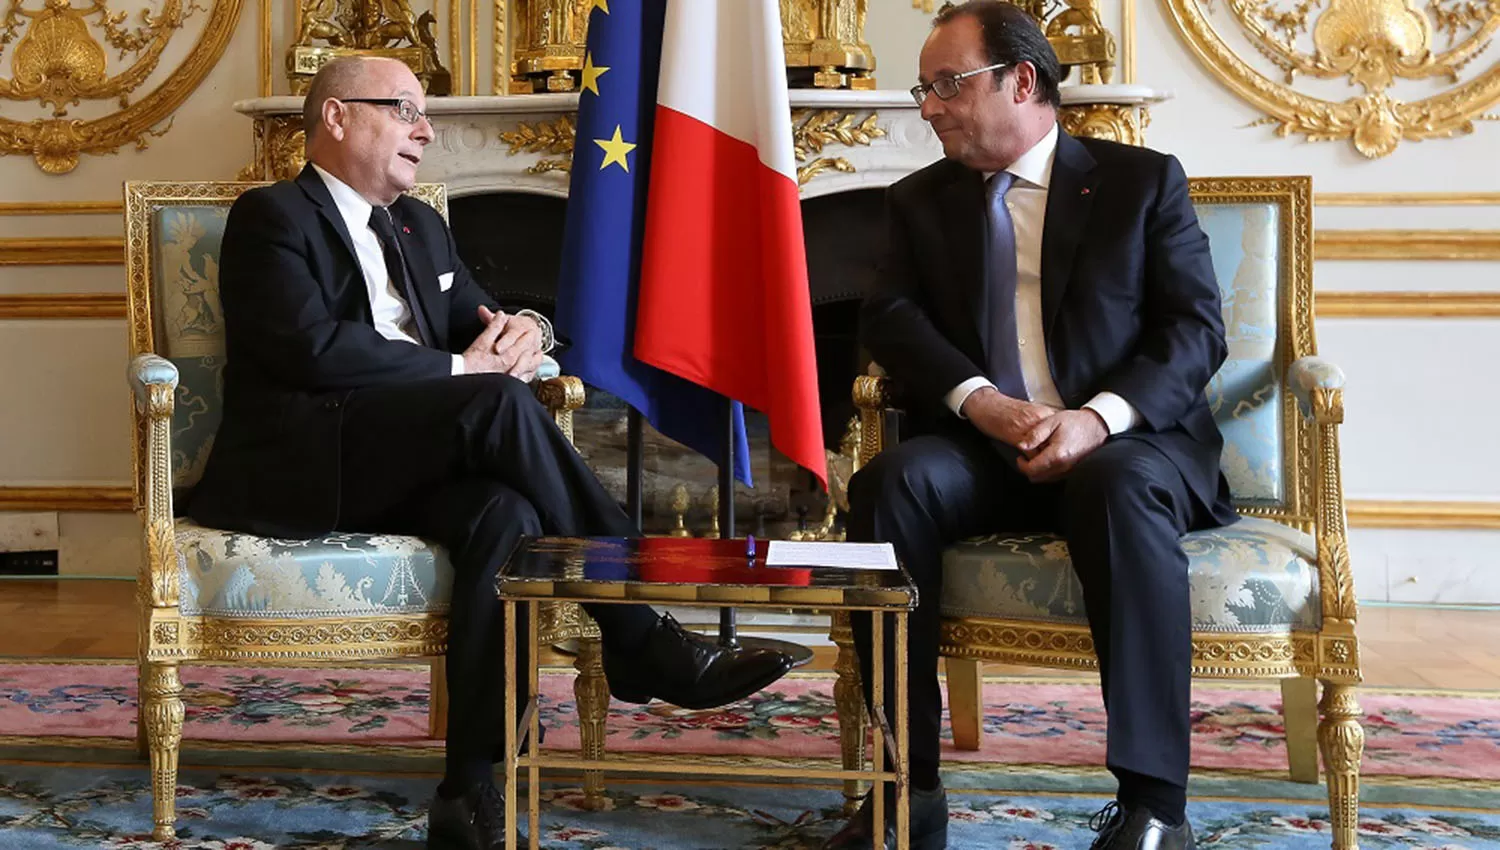 EN FRANCIA. Faurie (izquierda) ante el Presidente de Francia, François Hollande, en un encuentro oficial de 2016. FOTO TOMADA DE LA EMBAJADA ARGENTINA EN FRANCIA. 